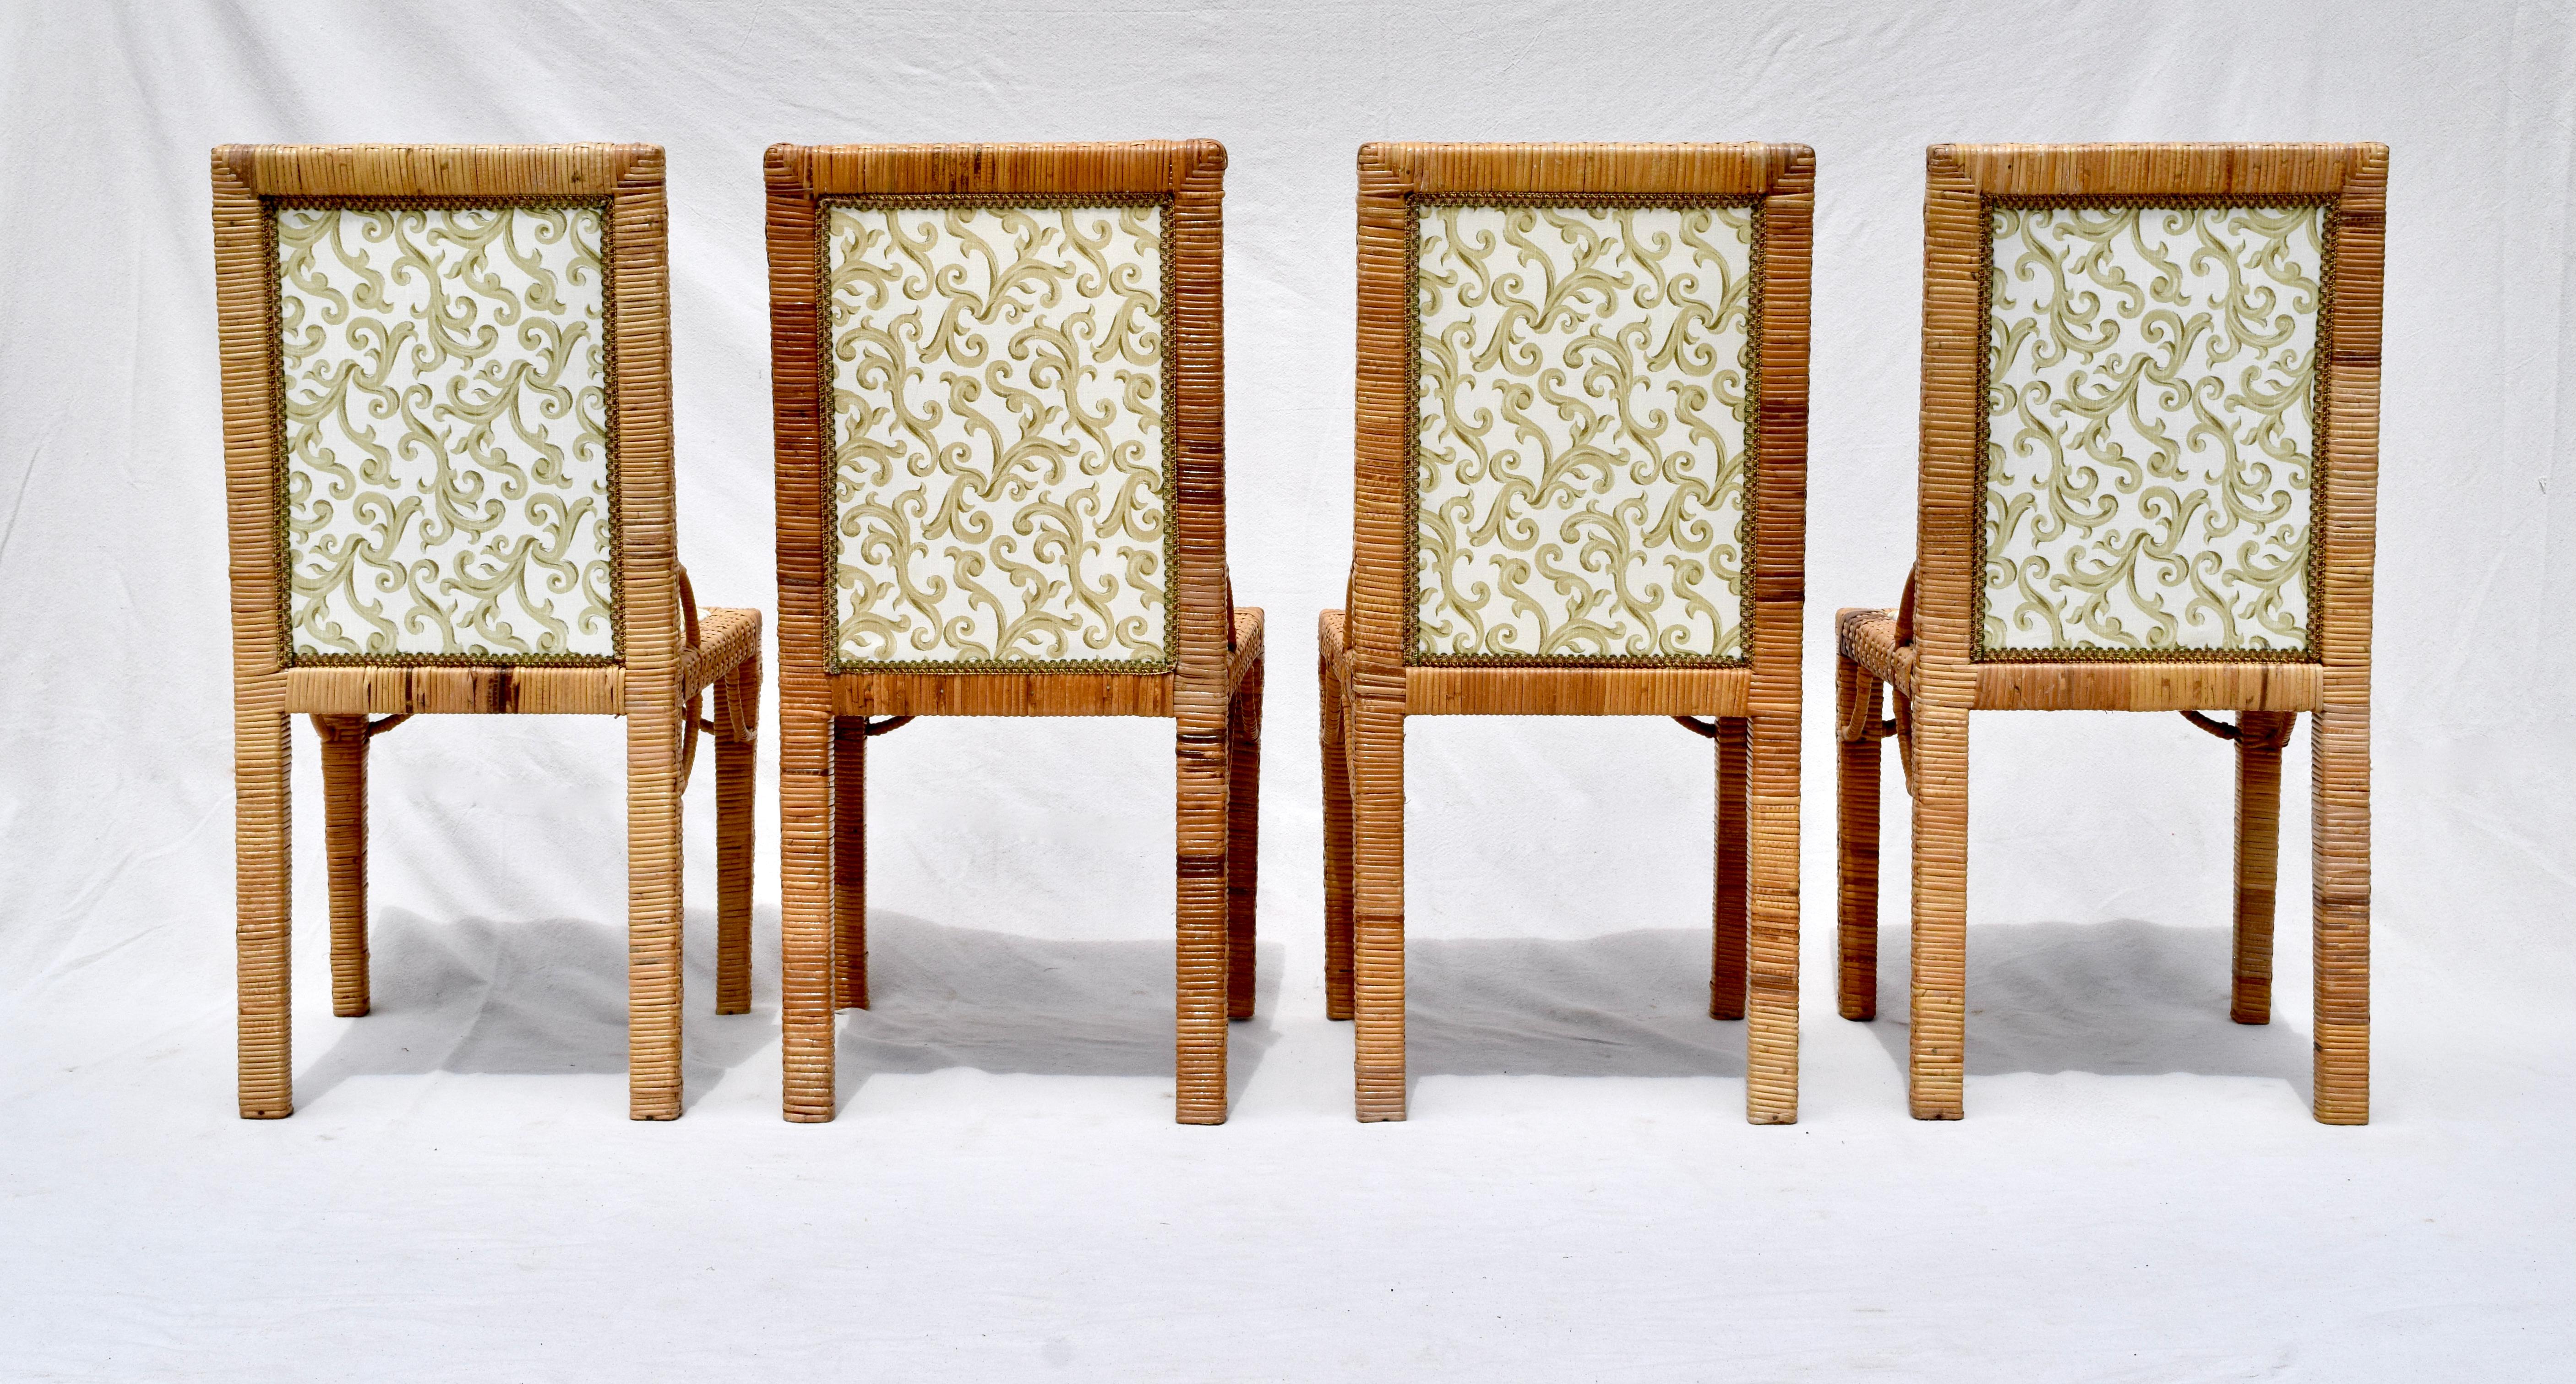 Ensemble de six chaises de salle à manger Parsons en tressage de panier, entièrement détaillées dans une tapisserie en coton Chris Stone d'époque, attribuée à Bielecky Brothers. De construction substantielle en raphia et en bois, l'ensemble a été